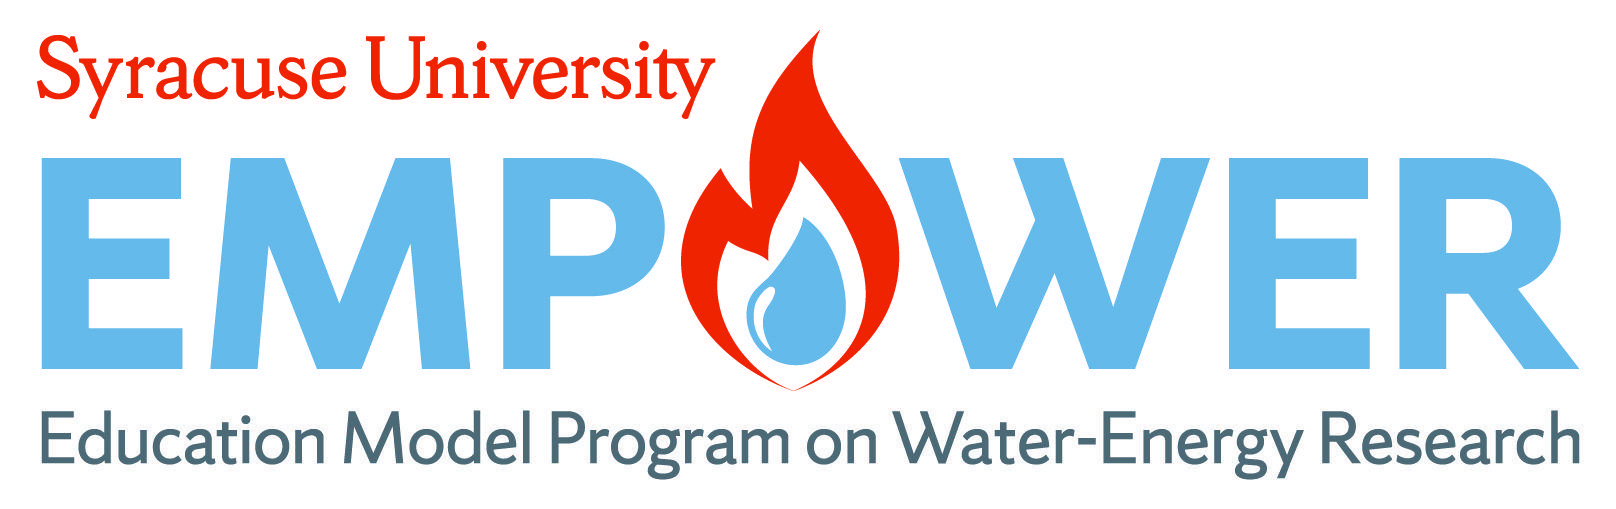 Empower Logo - EMPOWER Logo: Education Model Program On Water Energy